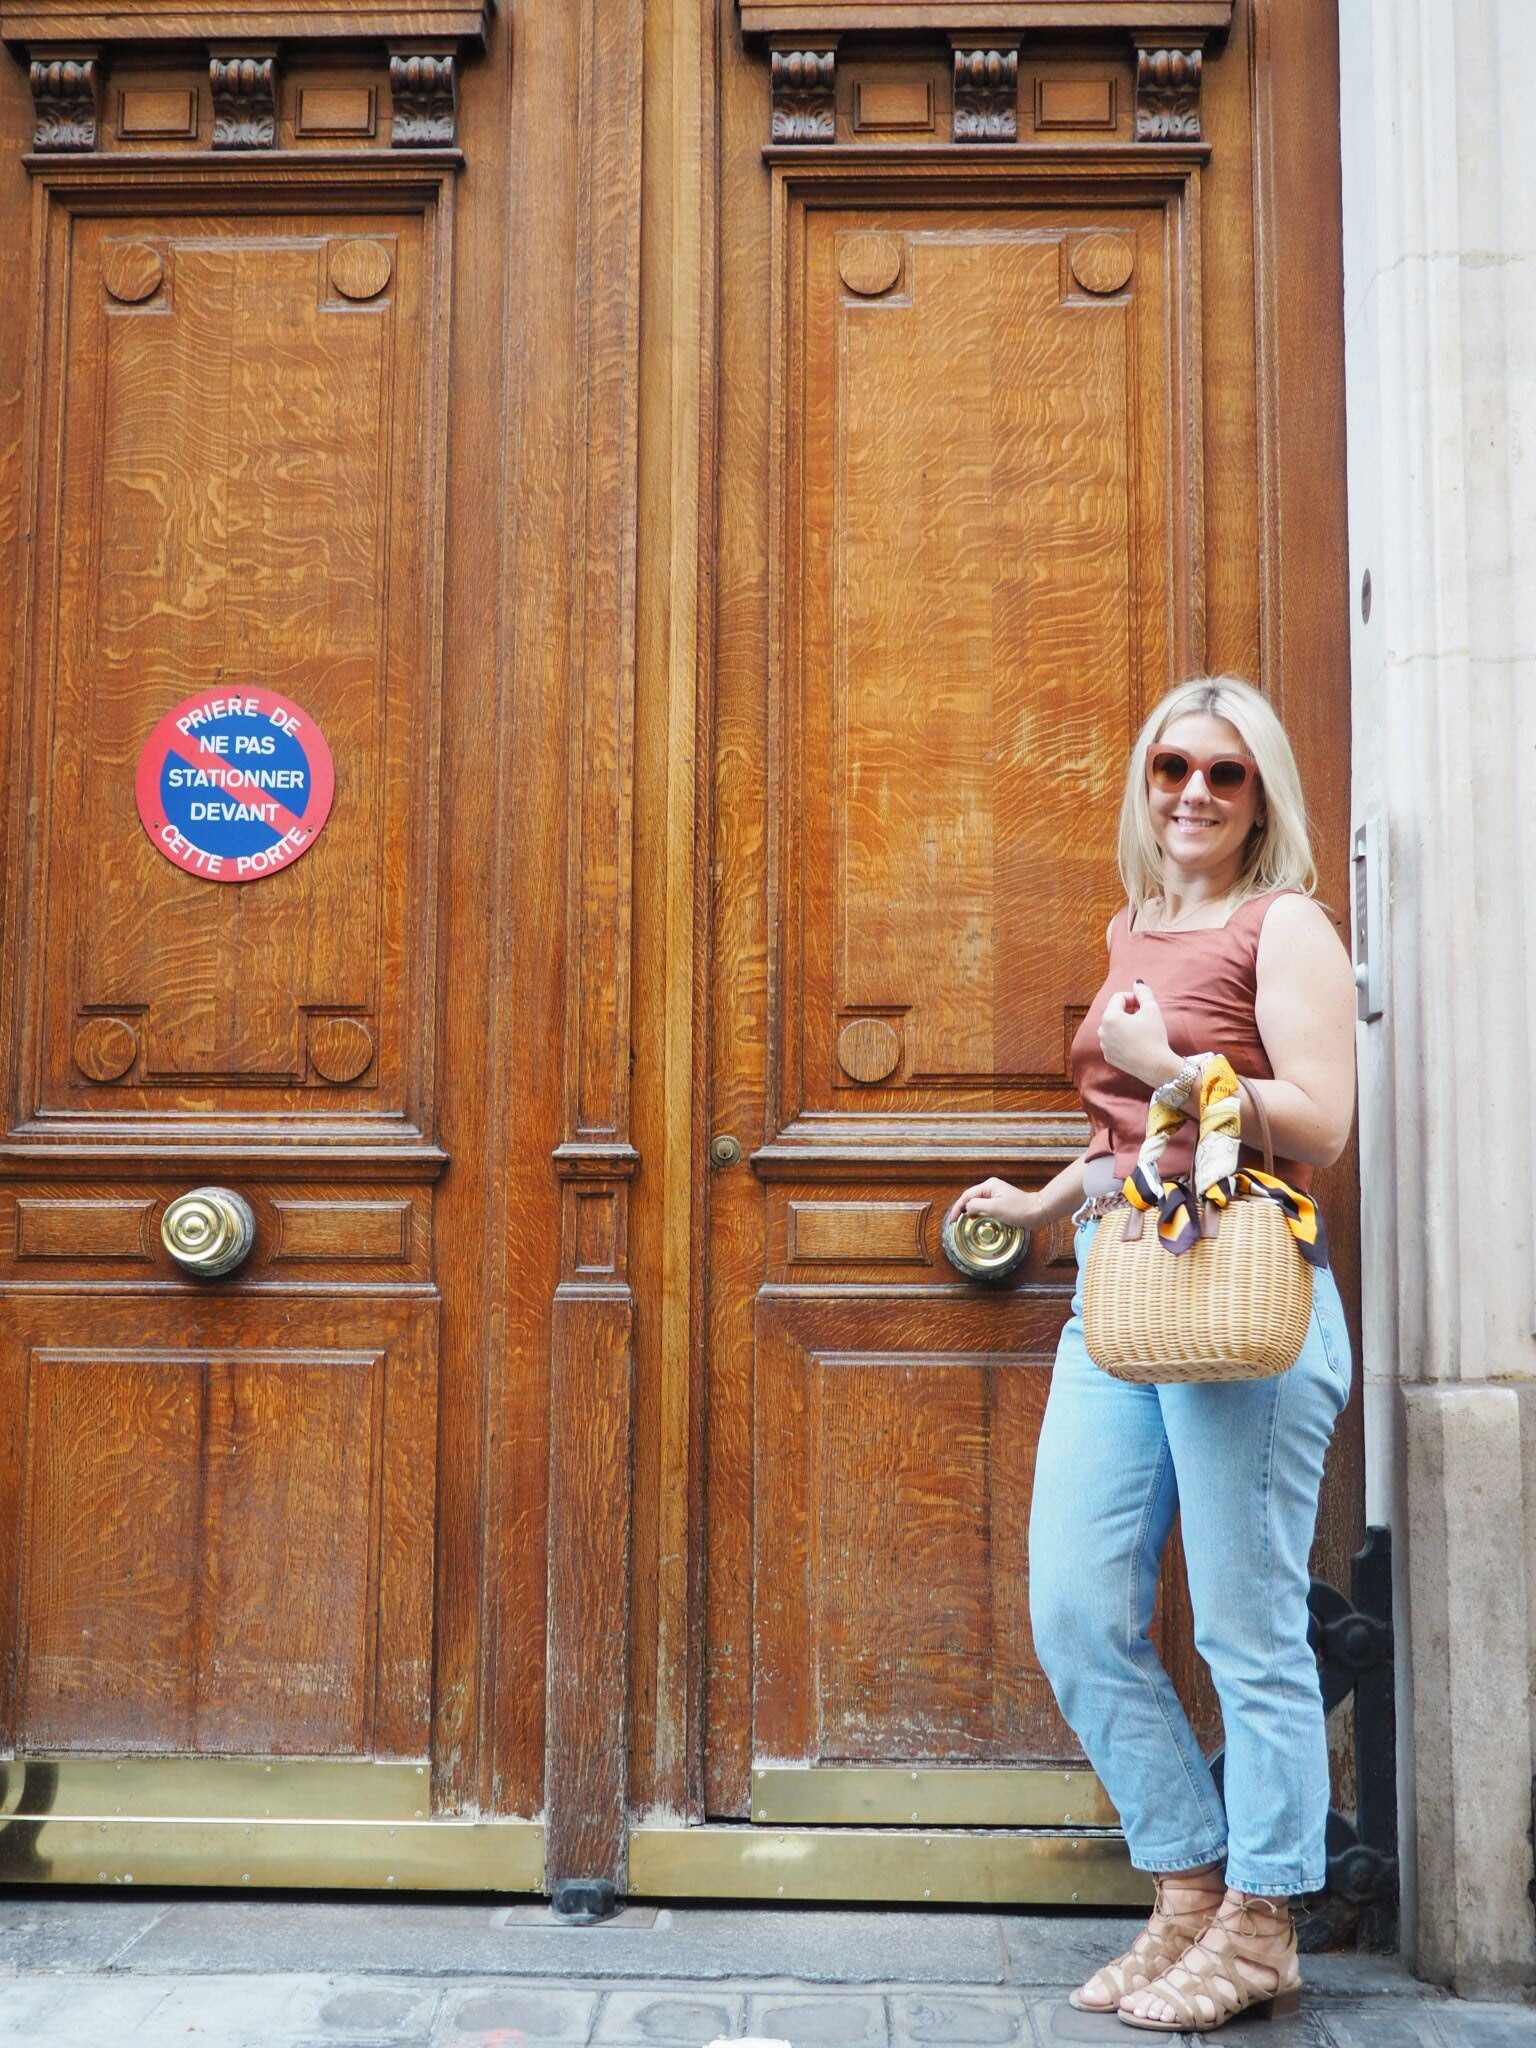 Paris has the best doors